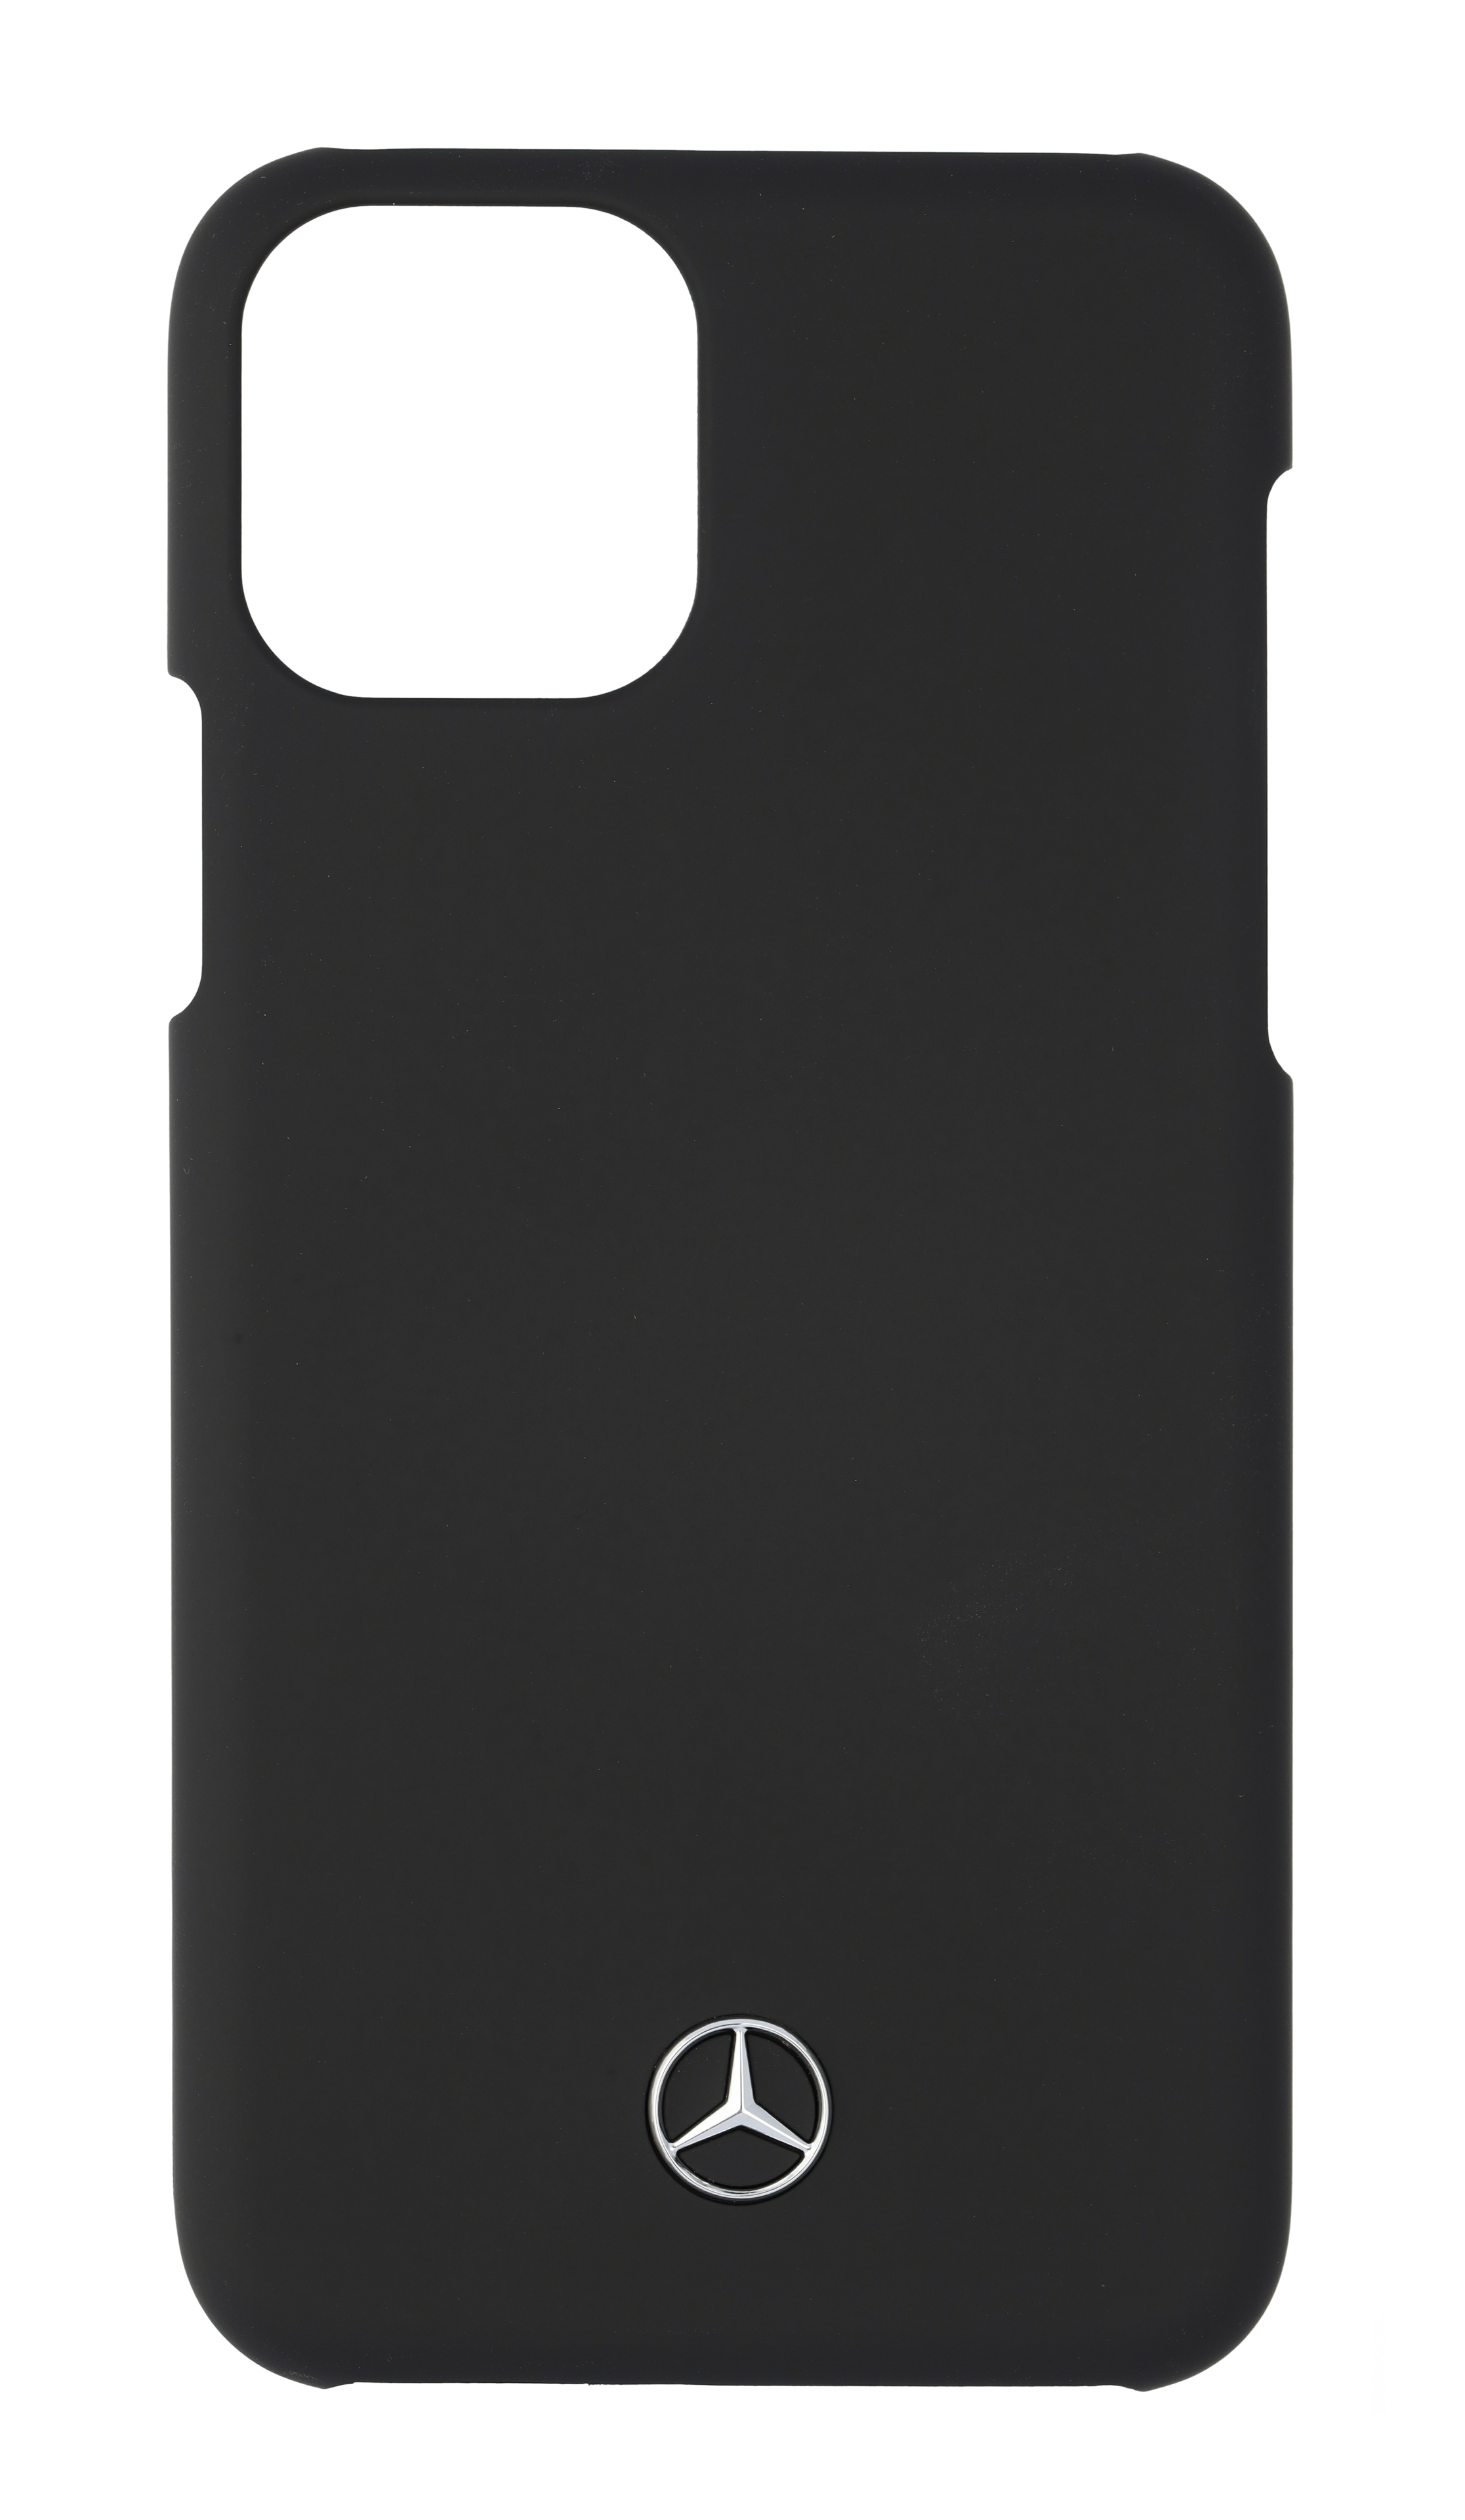 Hülle für iPhone® 11 Pro - schwarz, Polycarbonat / Metall